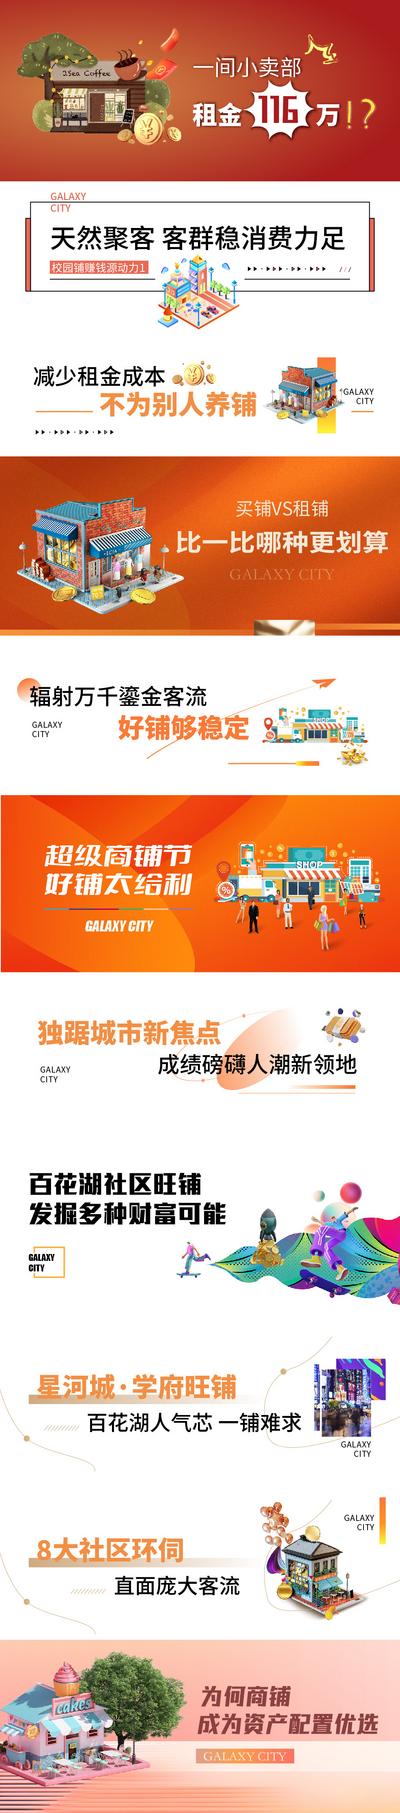 南门网 广告 海报 地产 商业 商铺 标题 文字 公众号 人气 长图